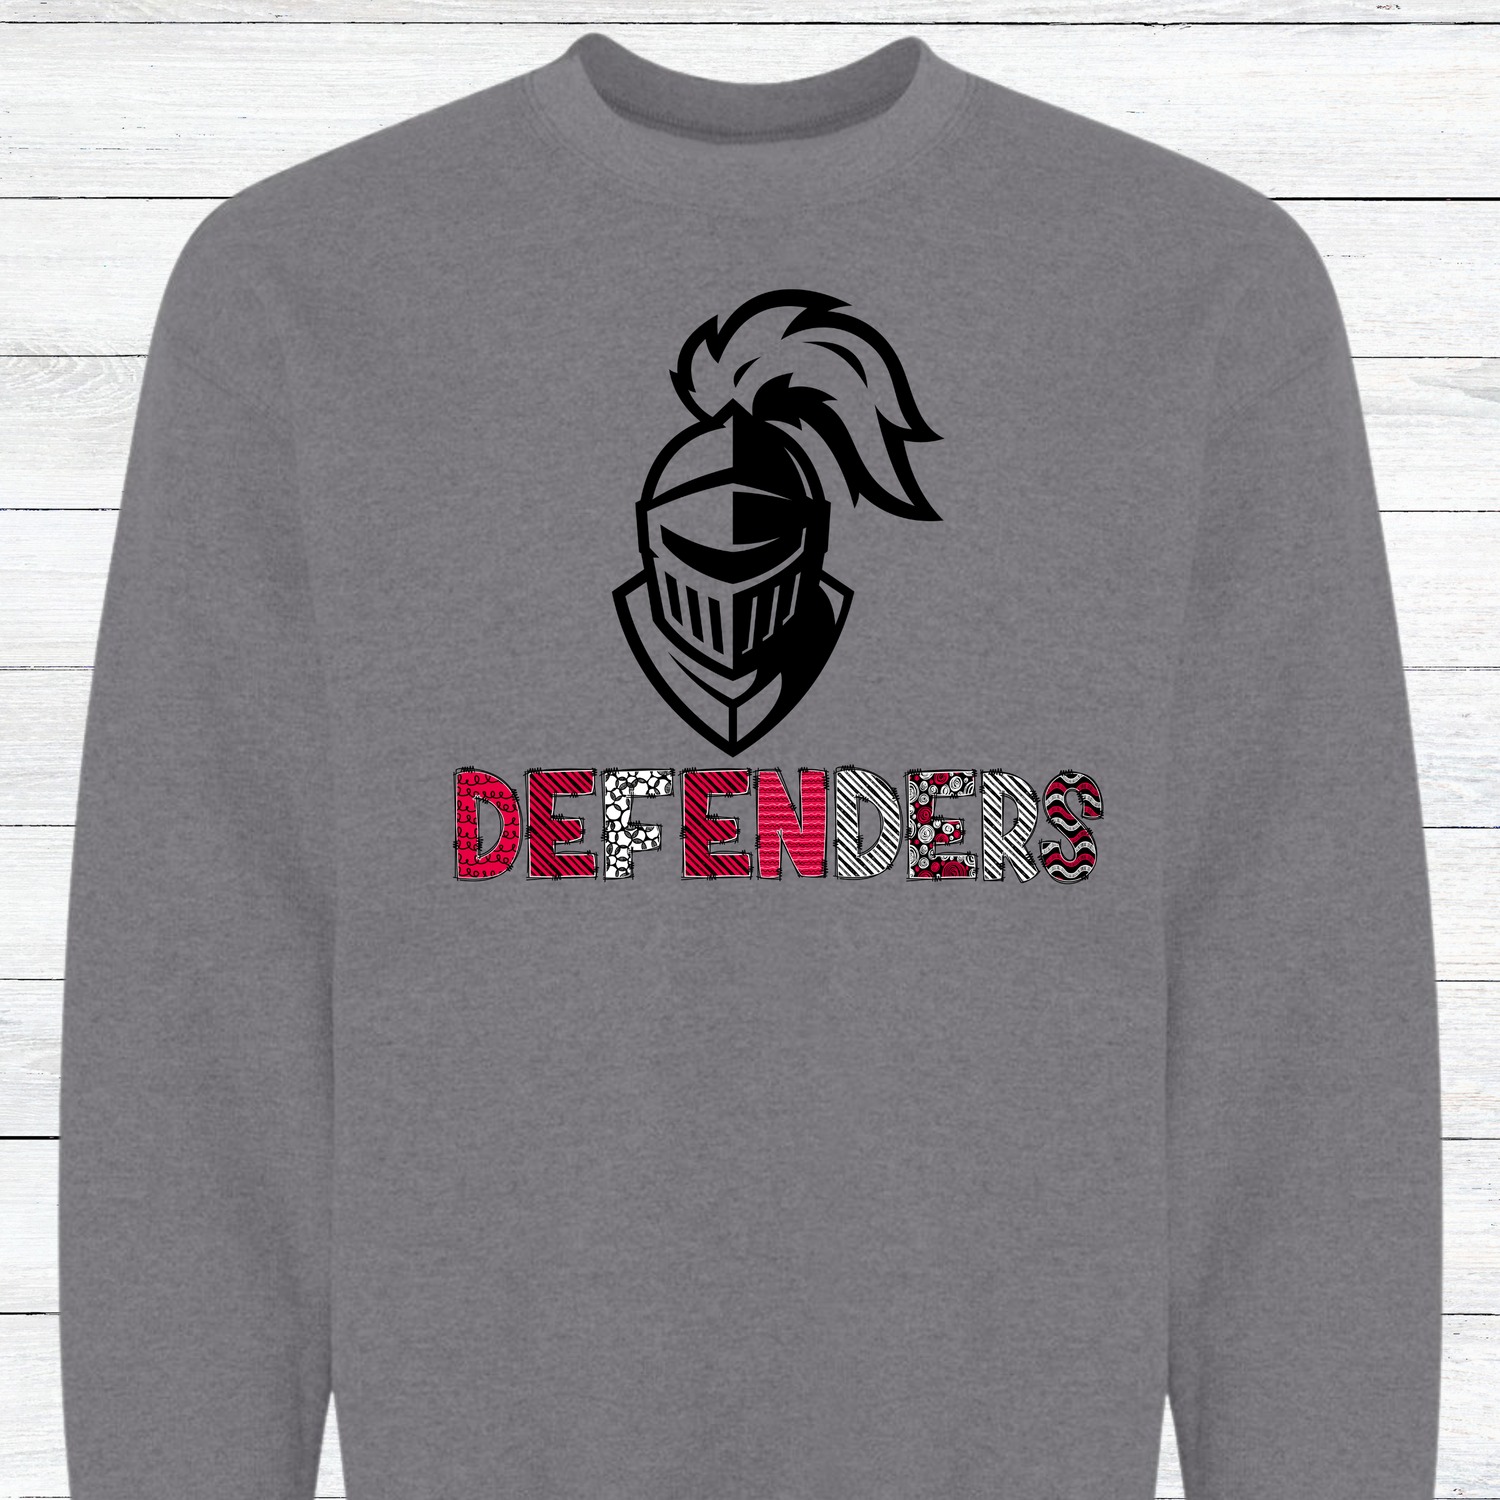 Defenders.12